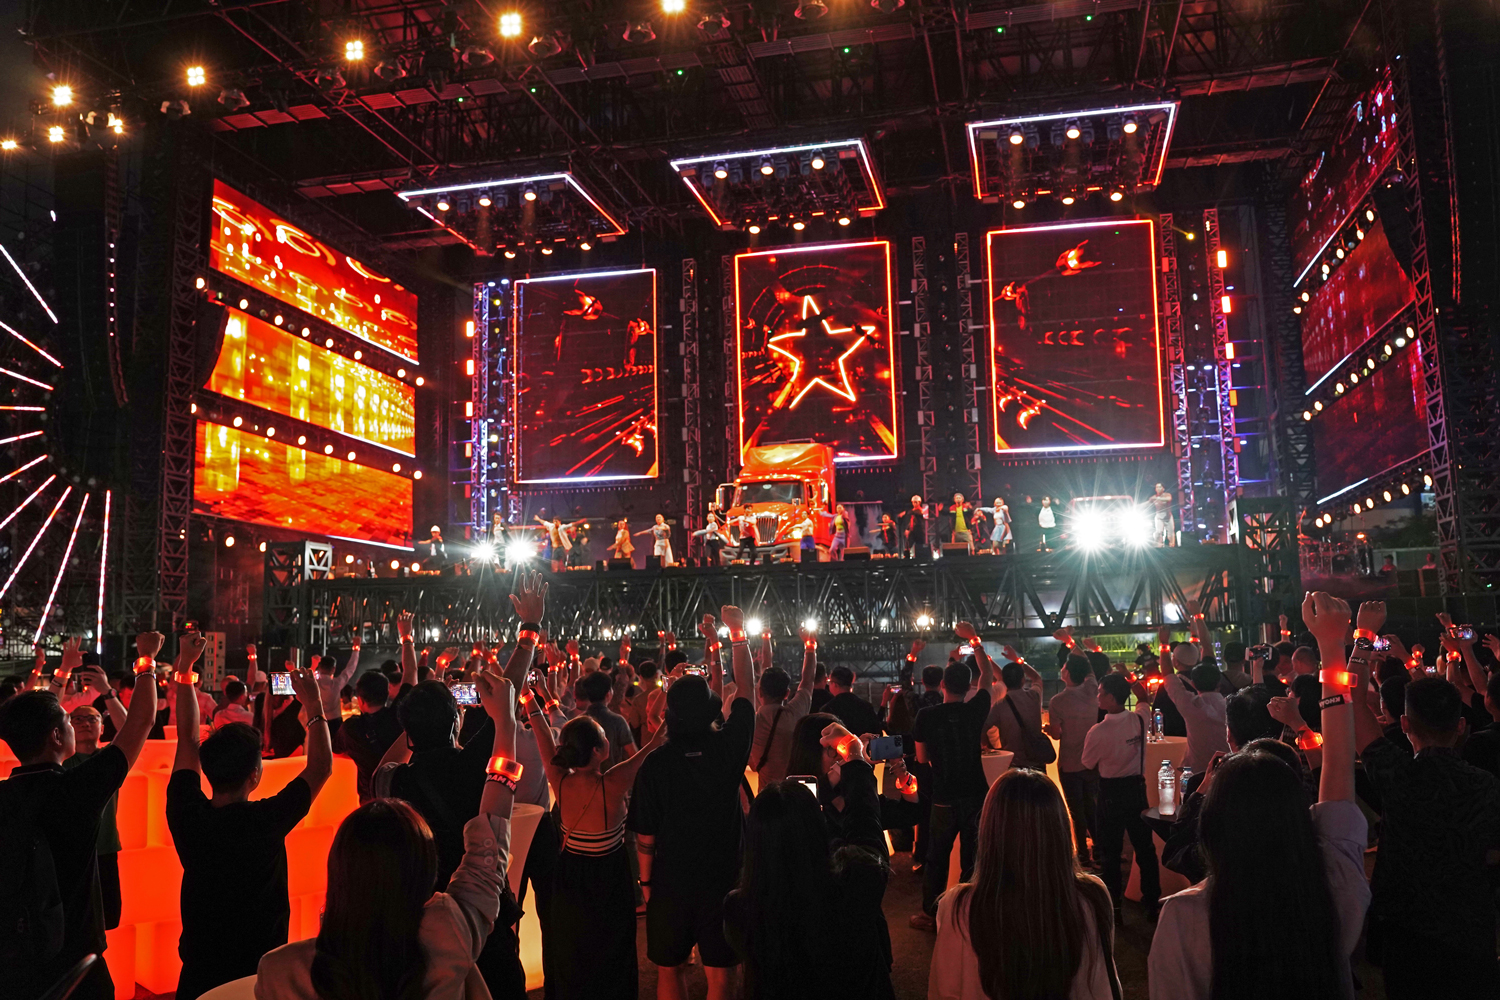 Khoảnh khắc sắc đỏ Việt Nam rực sáng trên tay tất cả những con người có chung niềm đam mê sân khấu.